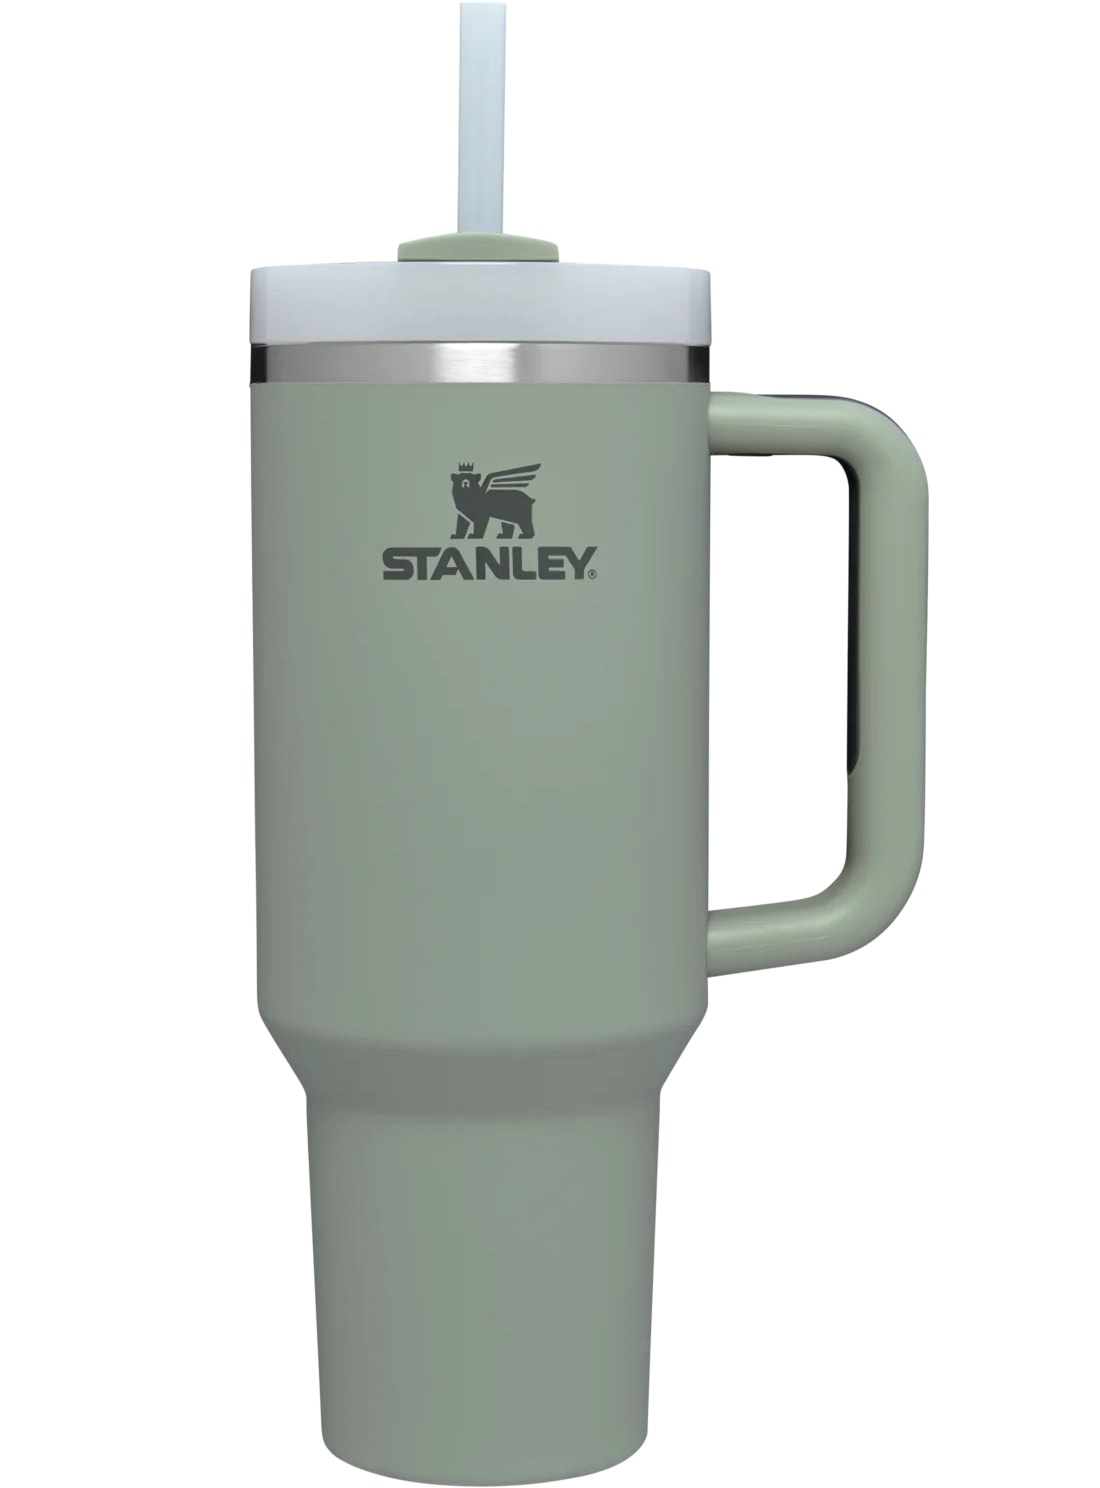 Stanley tumbler in green